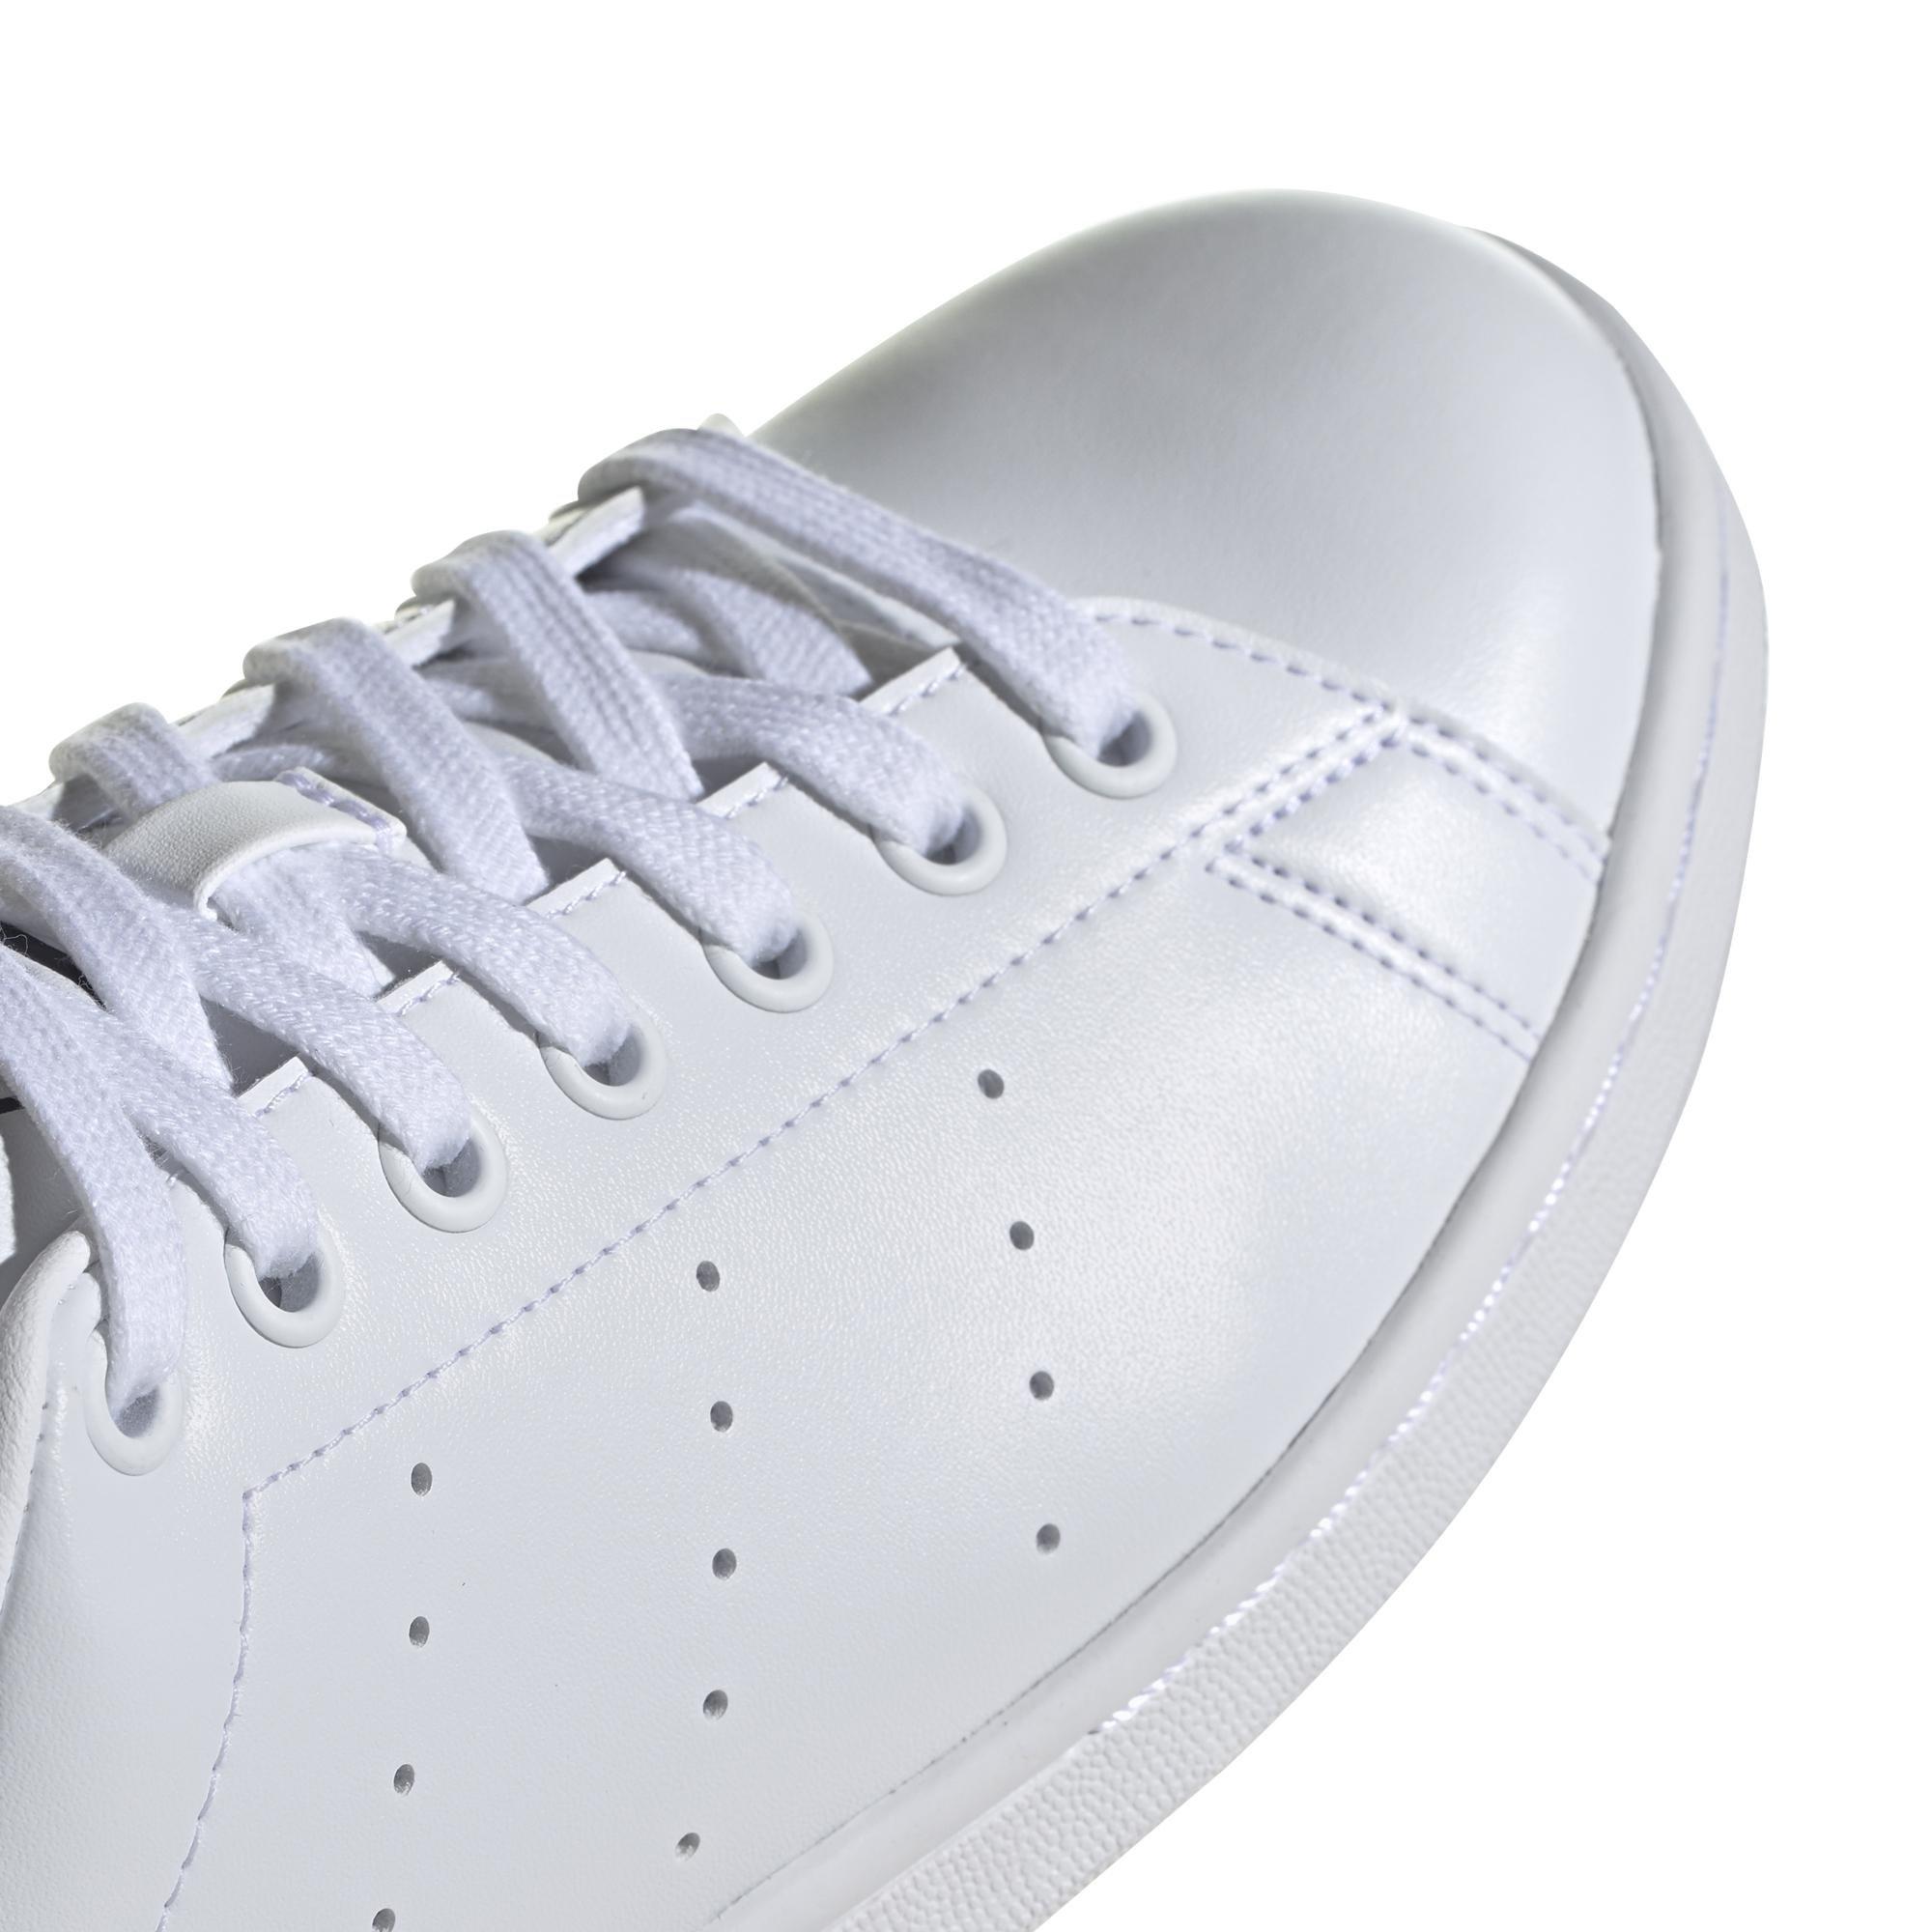 adidas - Men Stan Smith Shoes, White